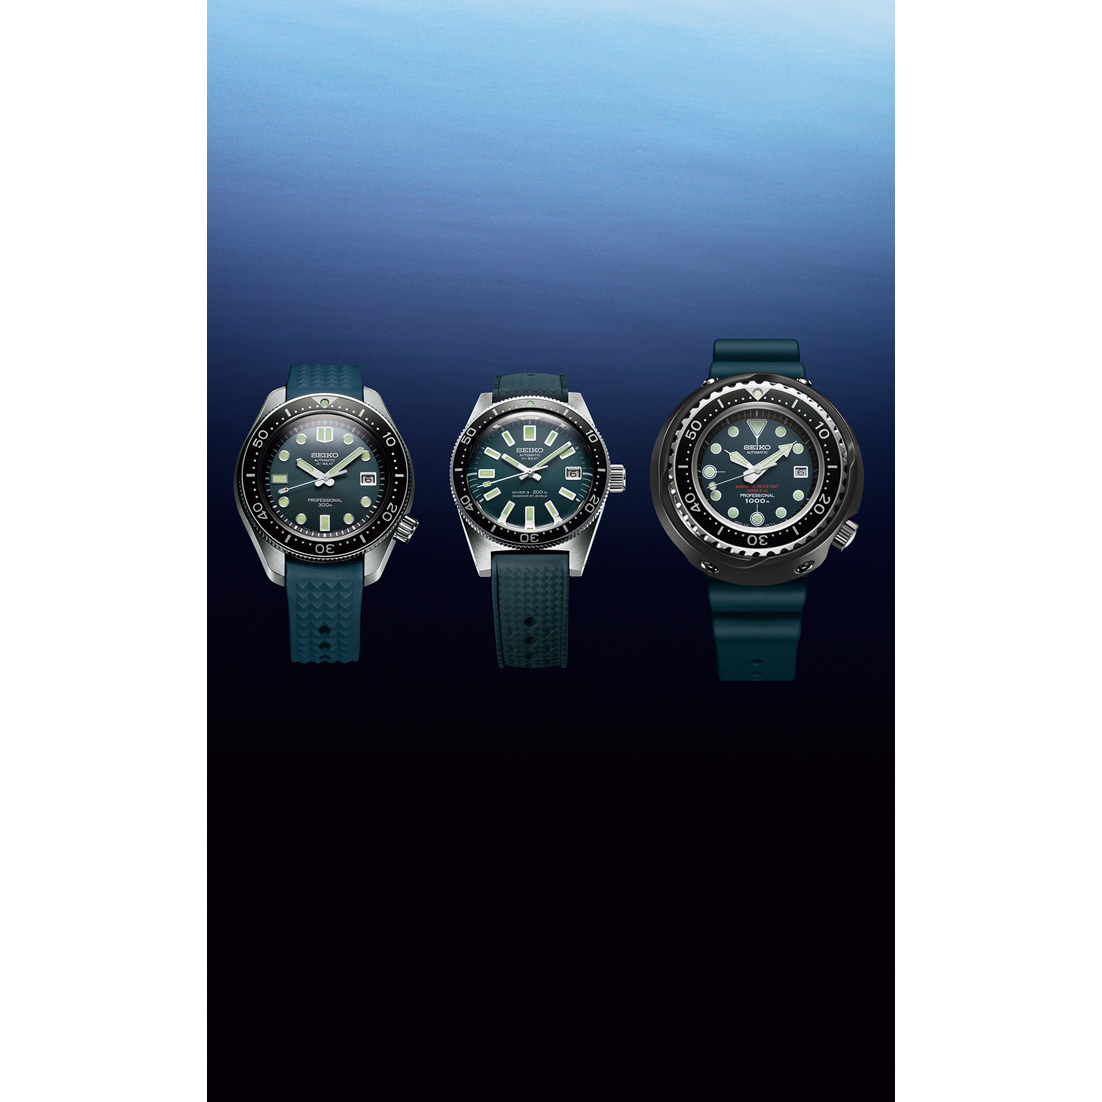  ネットブティック / 【セイコープロスペックス 国内正規品】プロスペックス SBDX035 Seiko Diver's Watch  55th Anniversary Limited Edition（1,100本限定）